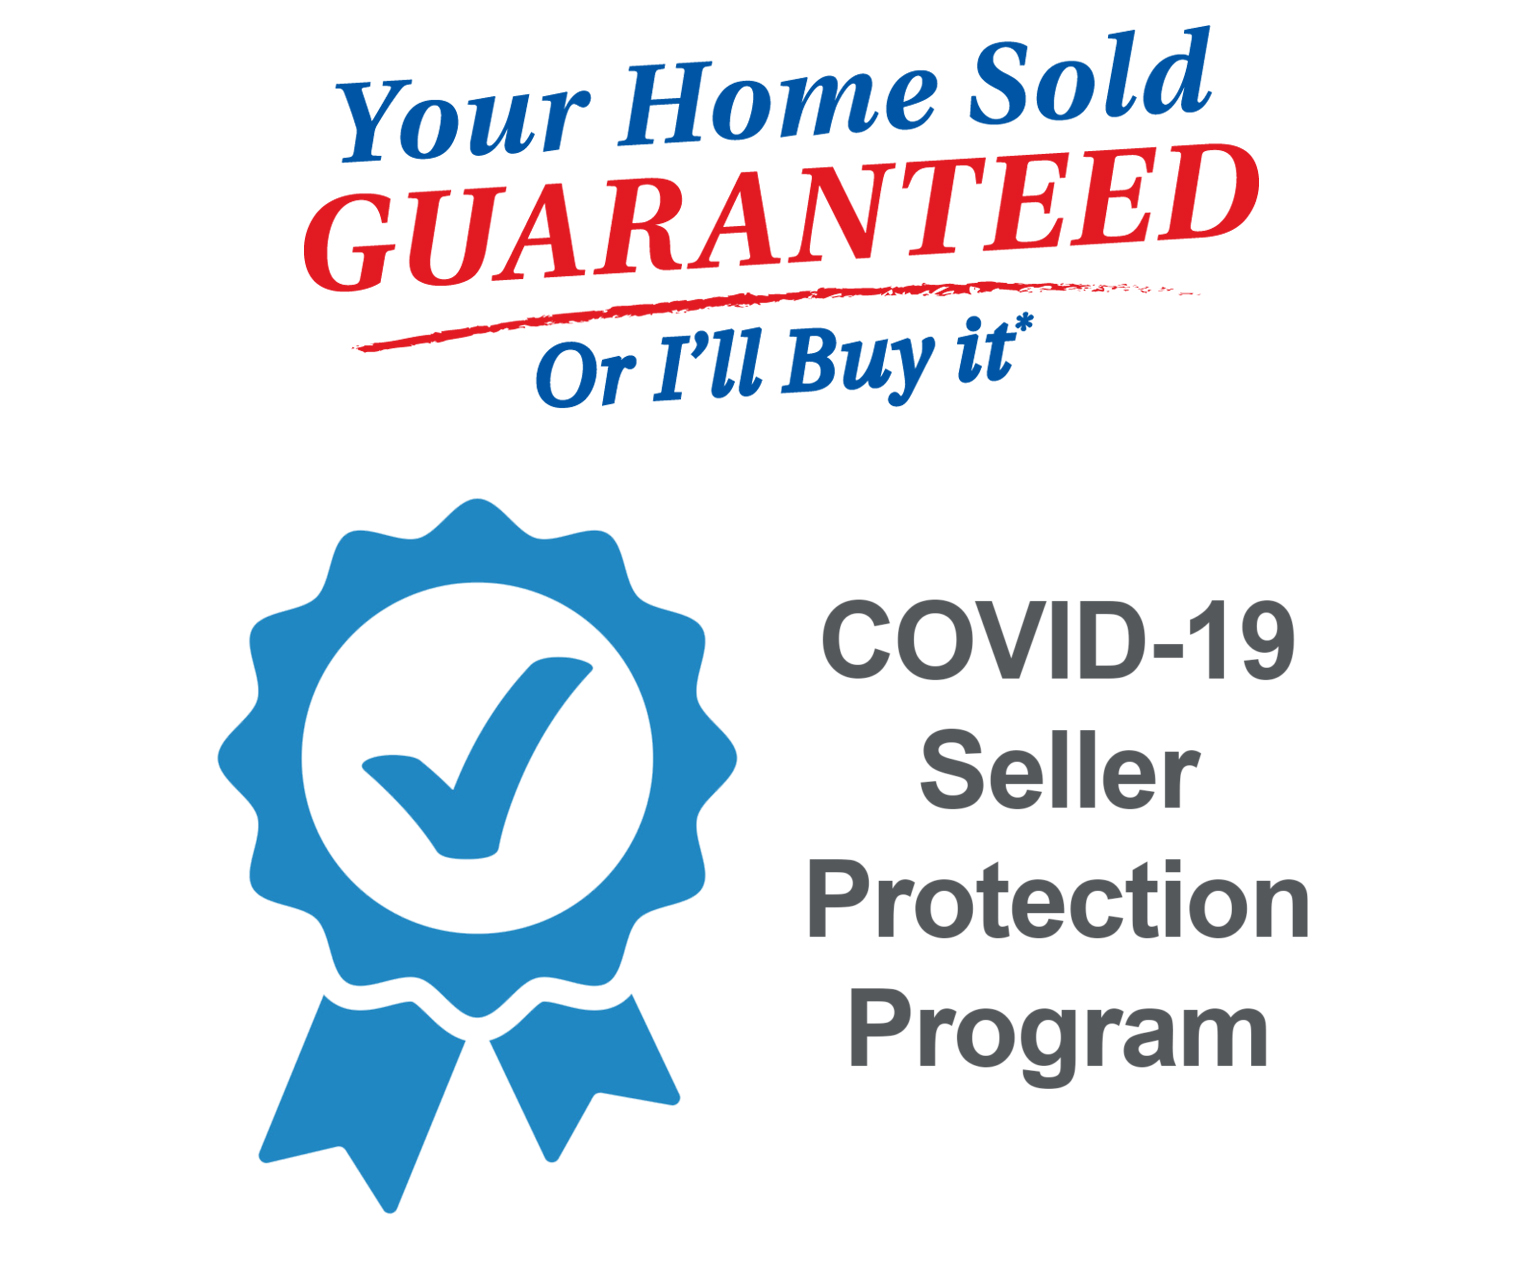 COVID-19-Seller-Protection-Program-1536x1271.jpg